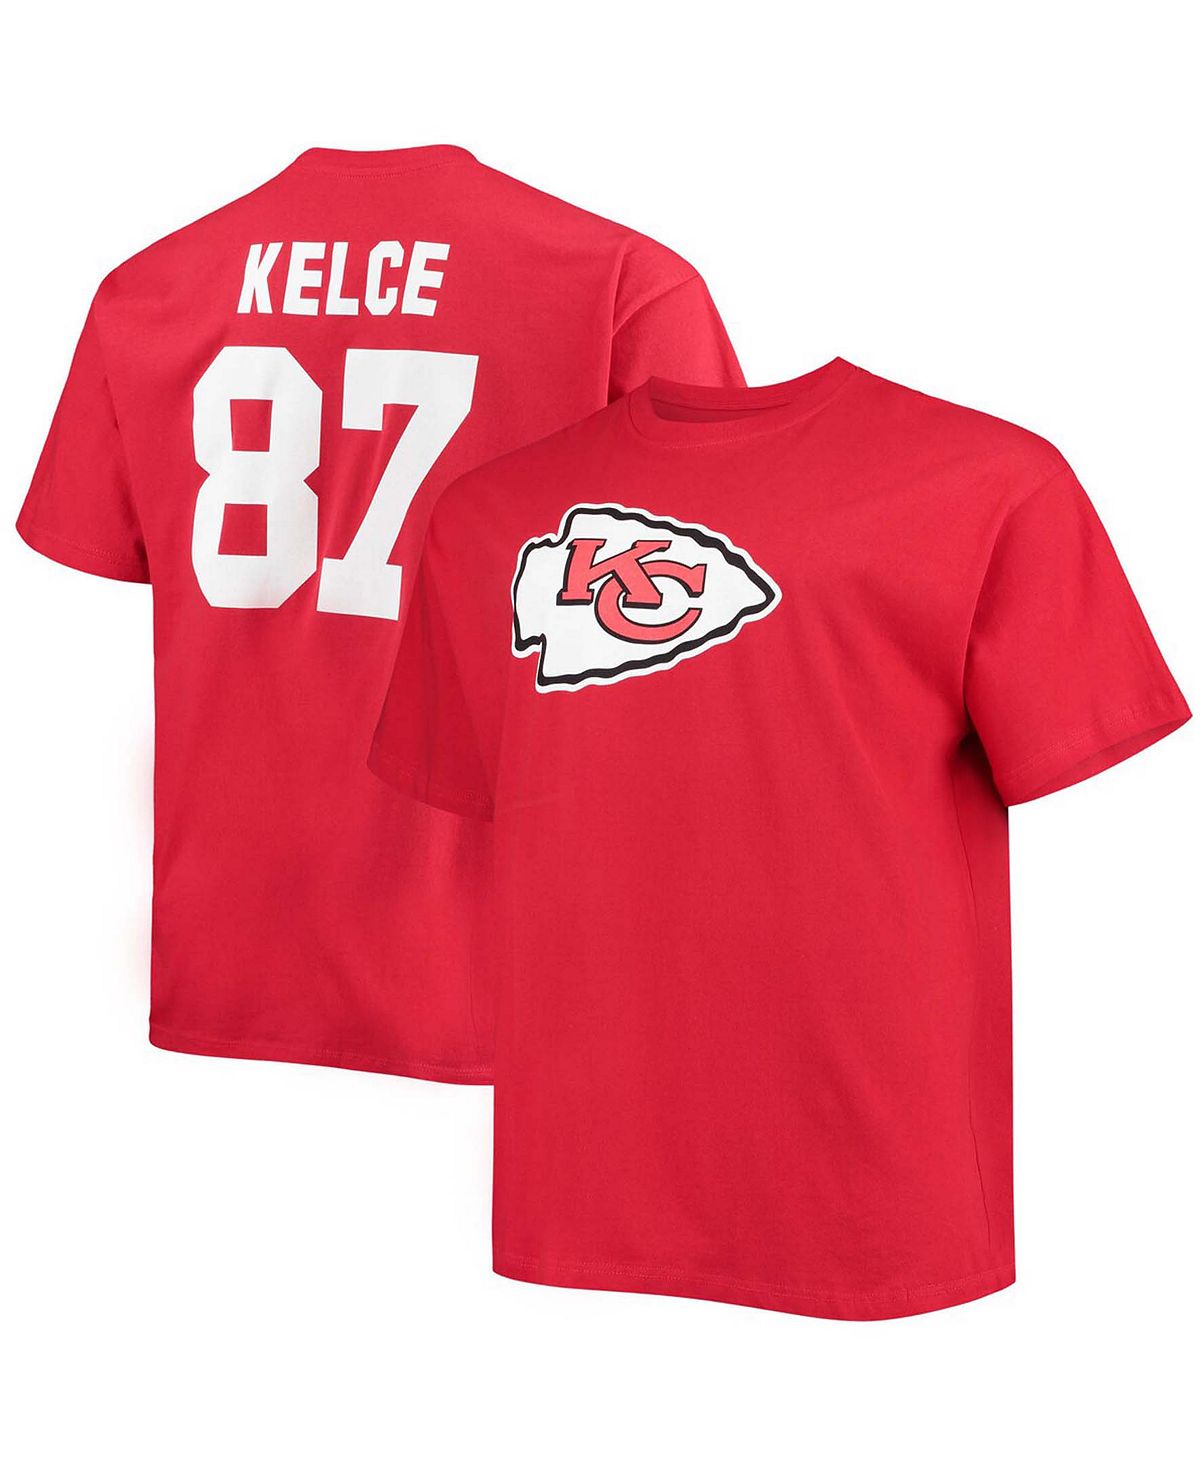 Мужская красная футболка Big and Tall Travis Kelce Kansas City Chiefs с именем игрока и номером Fanatics